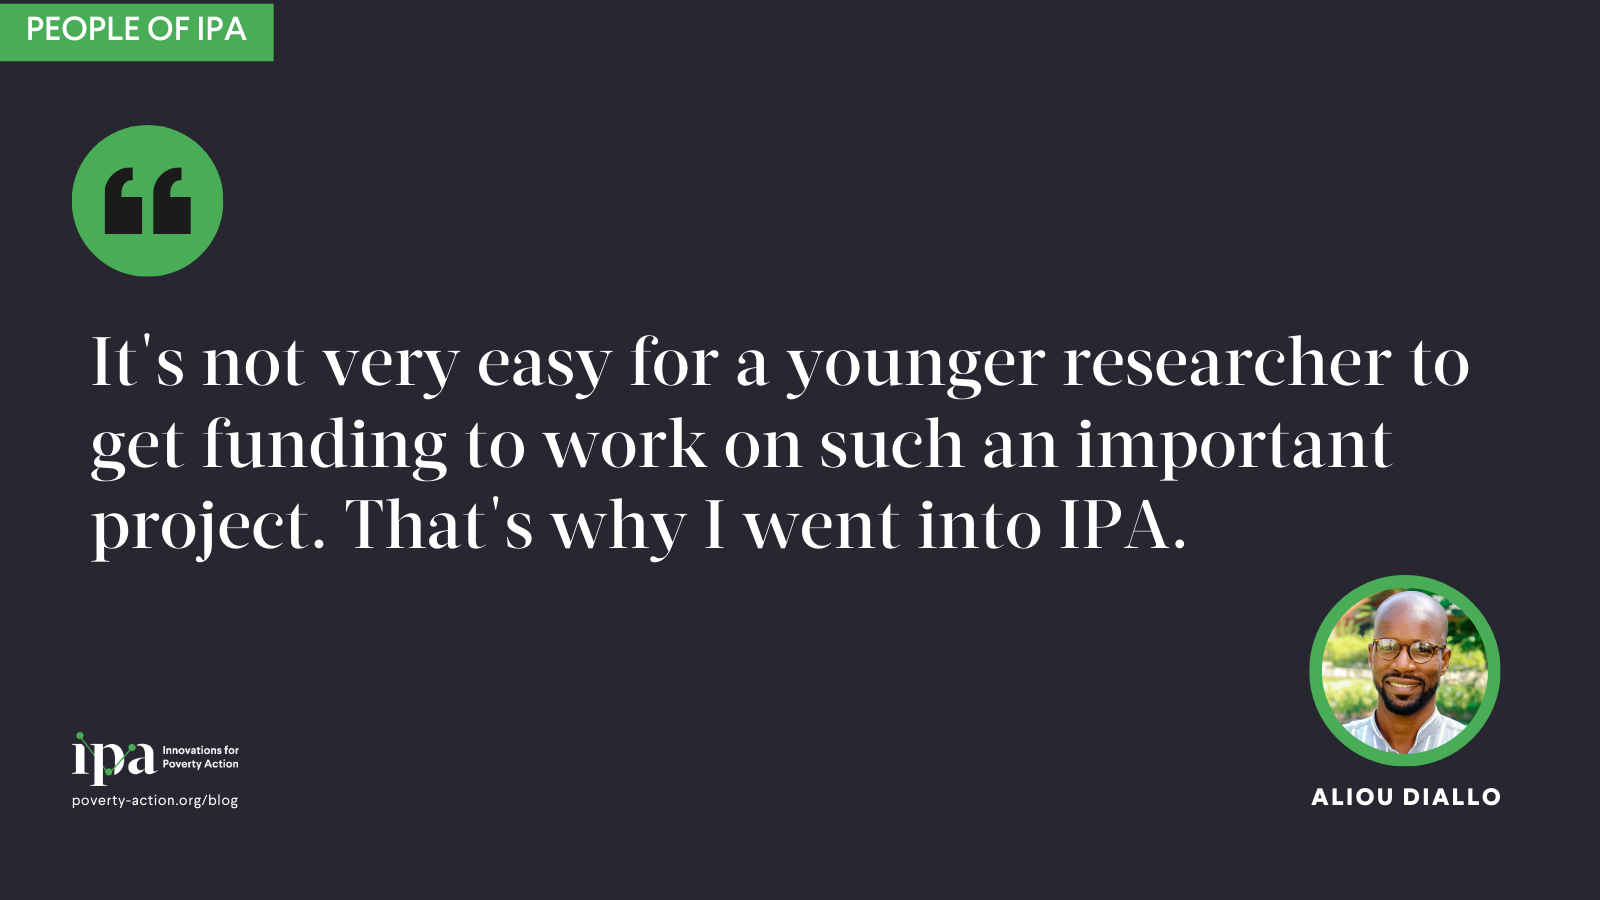 No es muy fácil para un investigador más joven conseguir financiación para trabajar en un proyecto tan importante. Por eso entré en IPA.